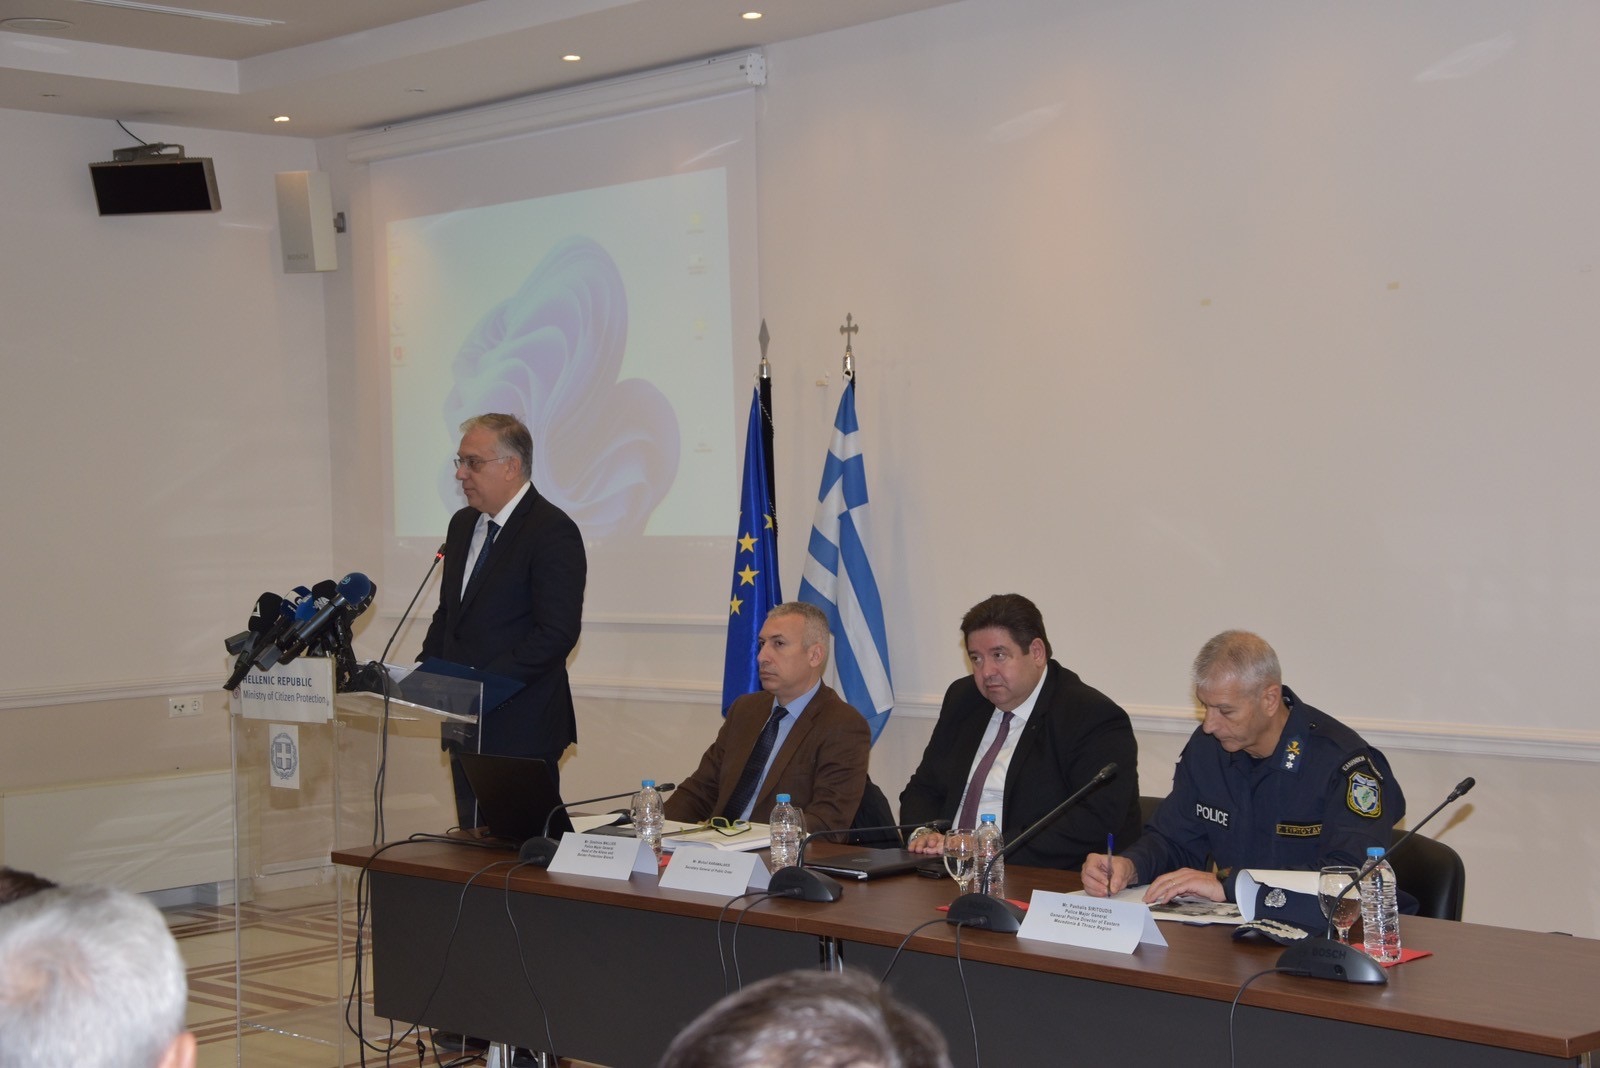 Μήνυμα ενότητας και αλληλεγγύης για την αποφασιστική φύλαξη των ευρωπαϊκών συνόρων με την Τουρκία στον Έβρο από τη συνάντηση Θεοδωρικάκου με 27 πρέσβεις στην Αλεξανδρούπολη